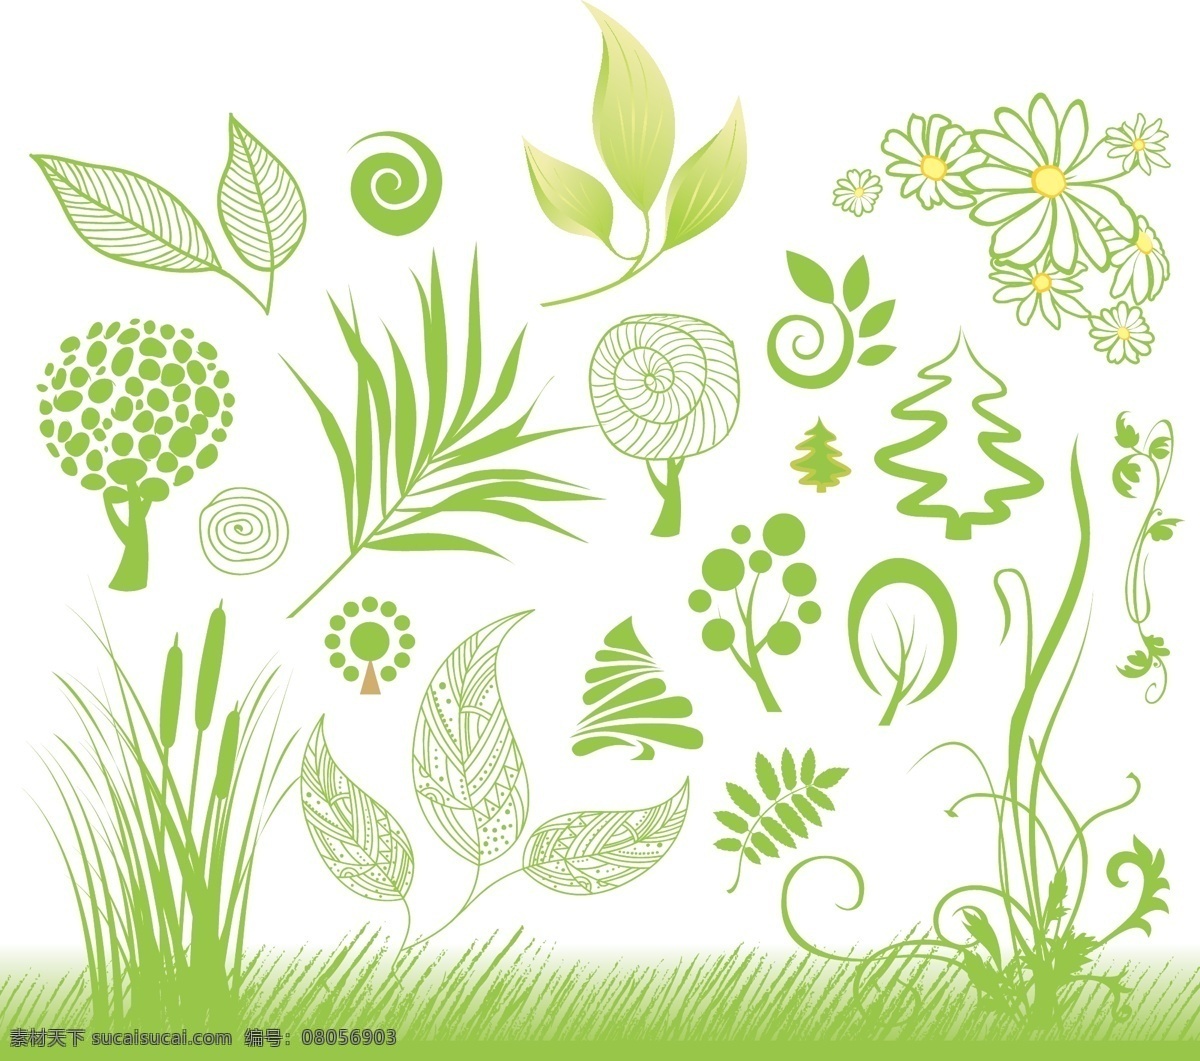 手绘 绿色植物 矢量图 花朵 绿草 树木 藤蔓 线稿 小麦 叶子 植物插画 其他矢量图